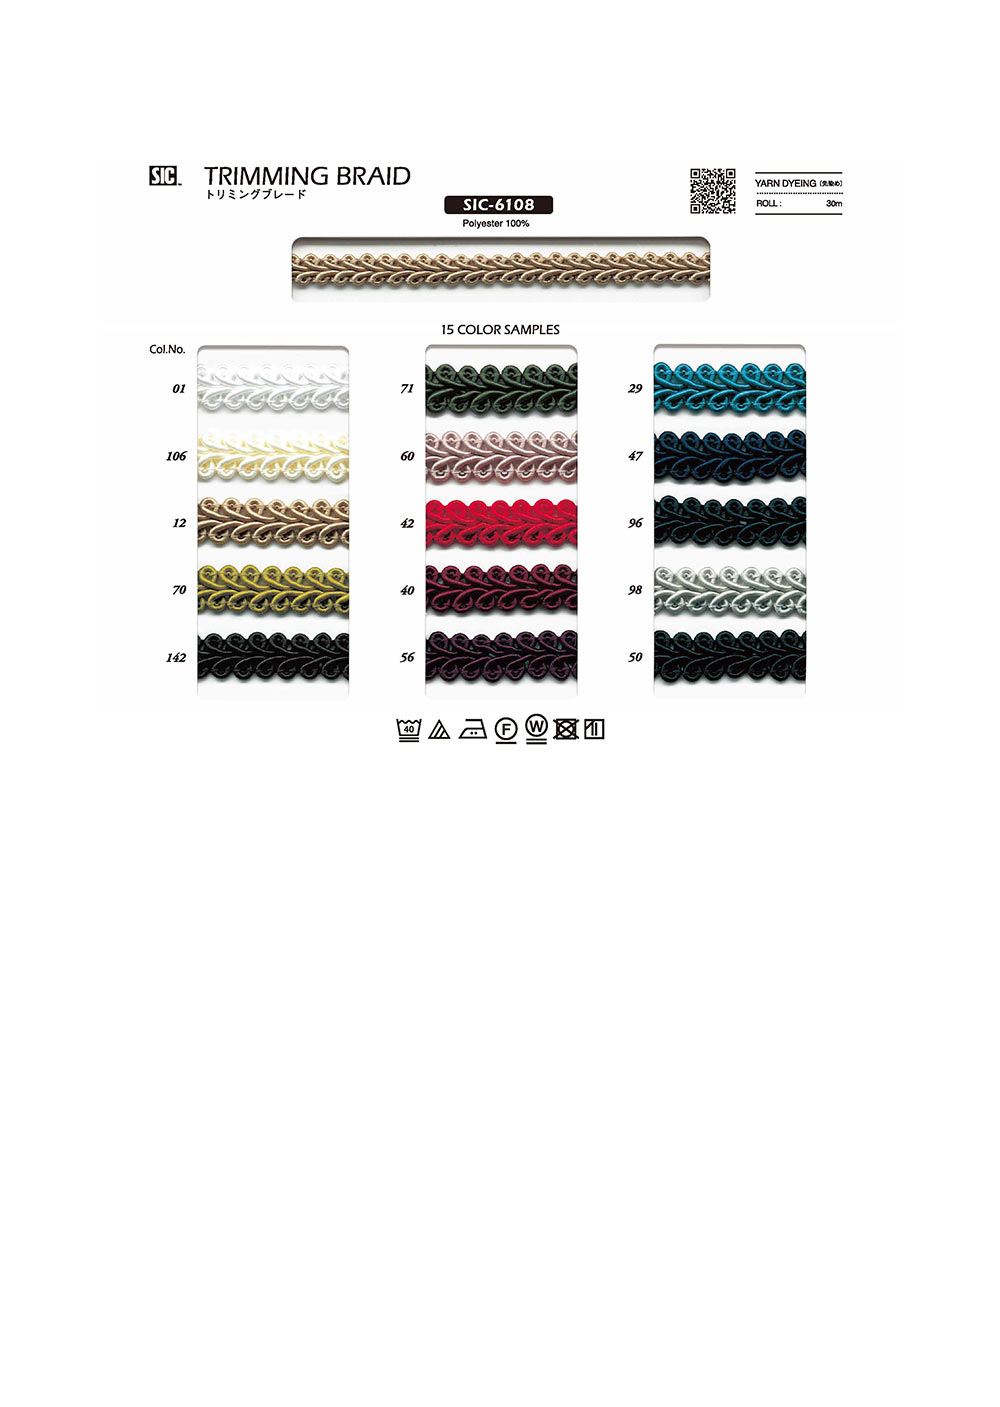 SIC-6108 Trimming Braid[Ribbon Tape Cord] SHINDO(SIC)